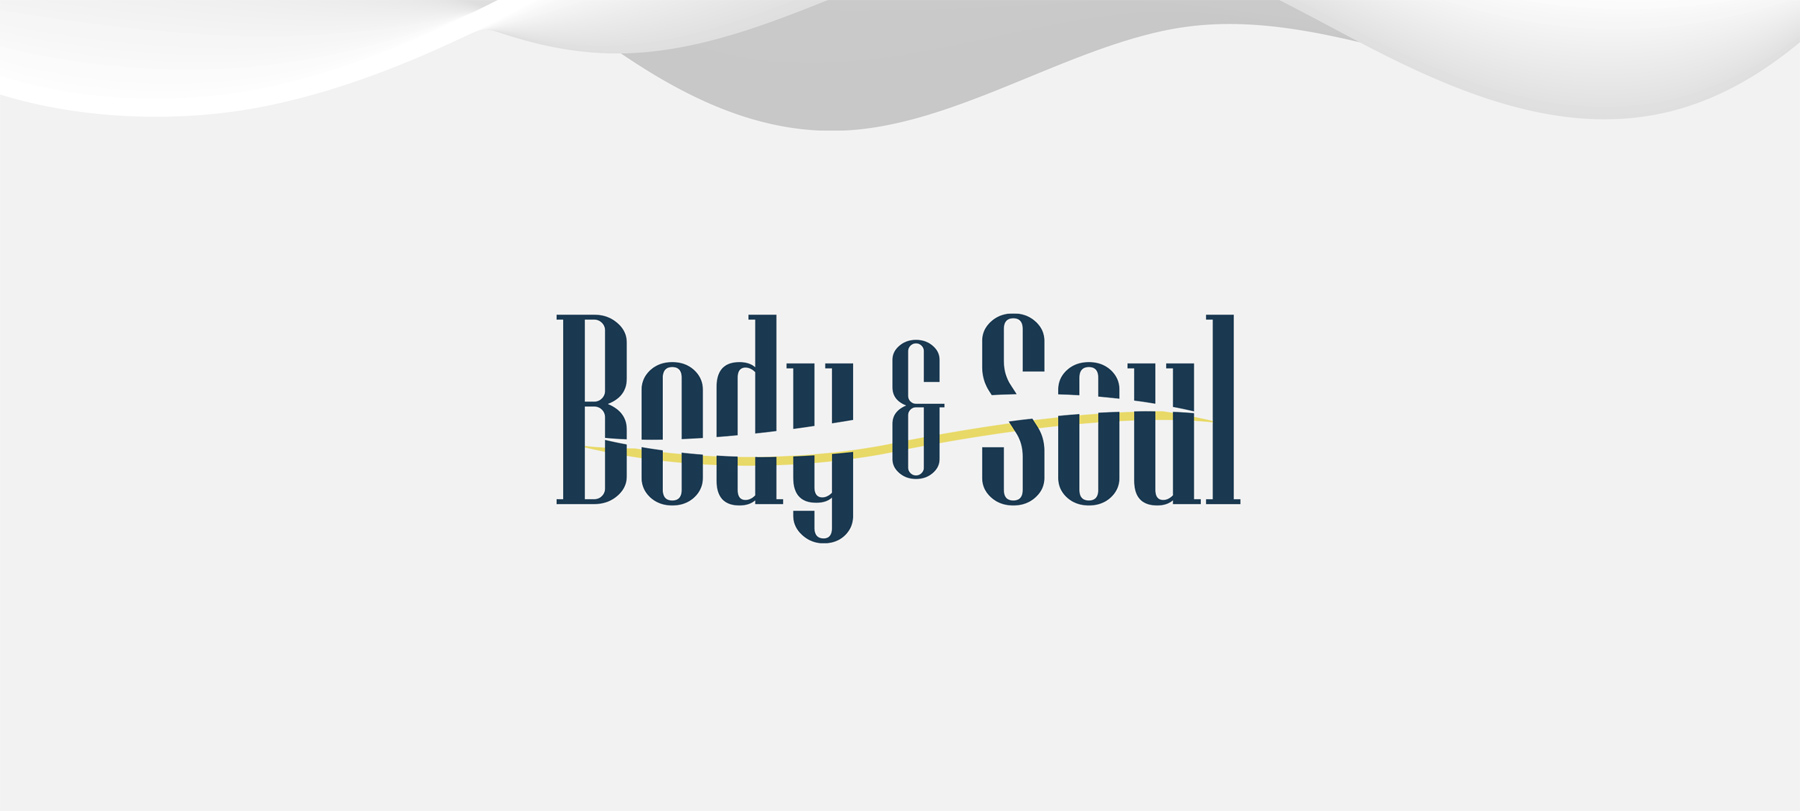 Logo design for Body & Soul